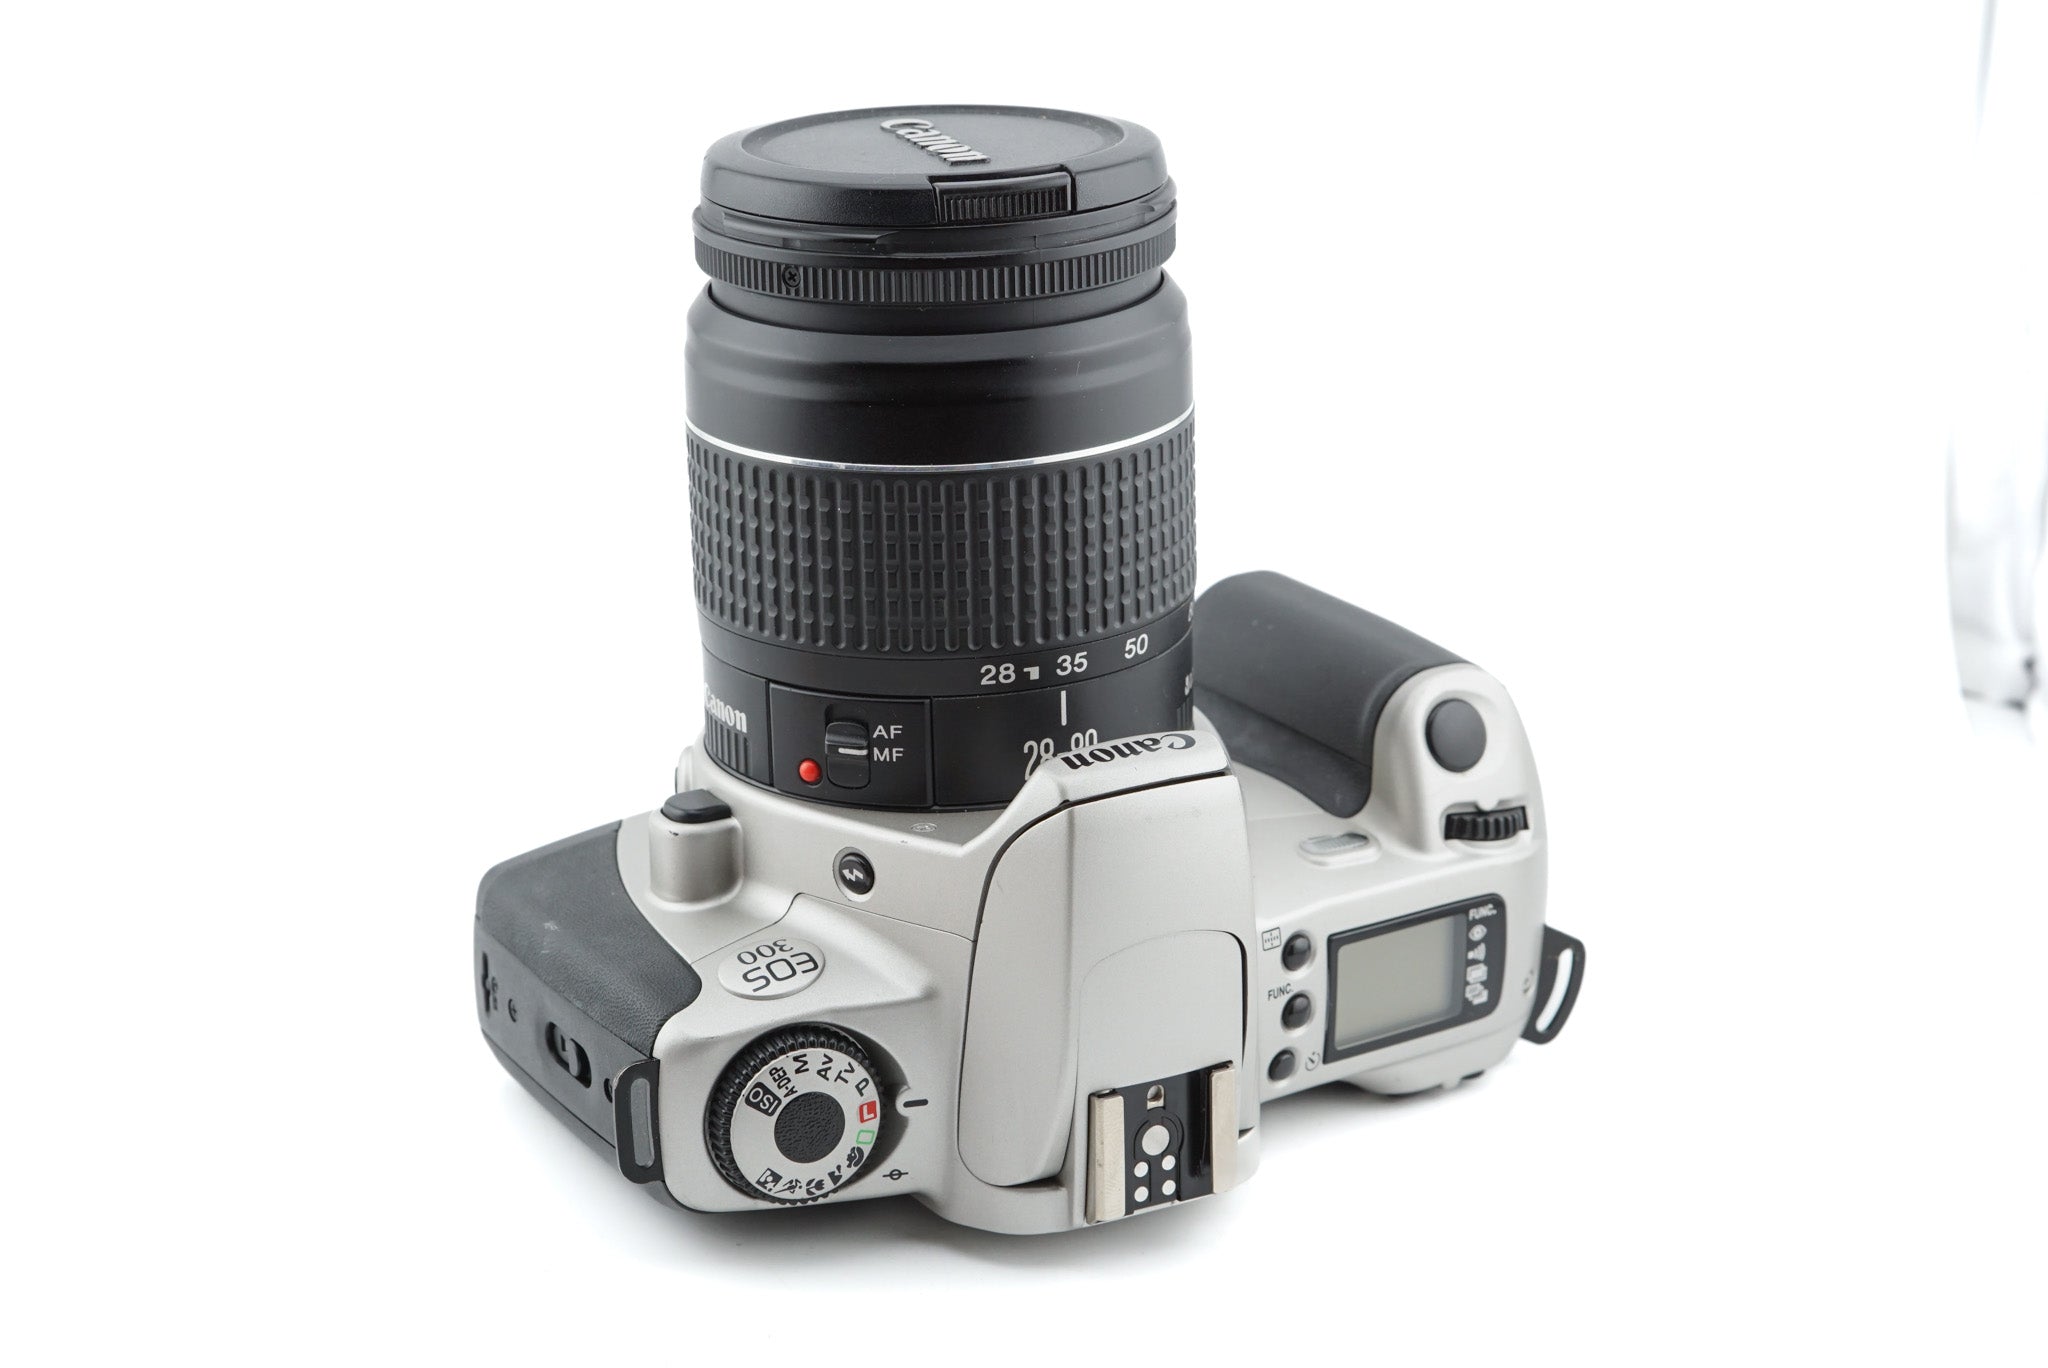 Canon EOS 300 + 28-80mm f3.5-5.6 II – Kamerastore